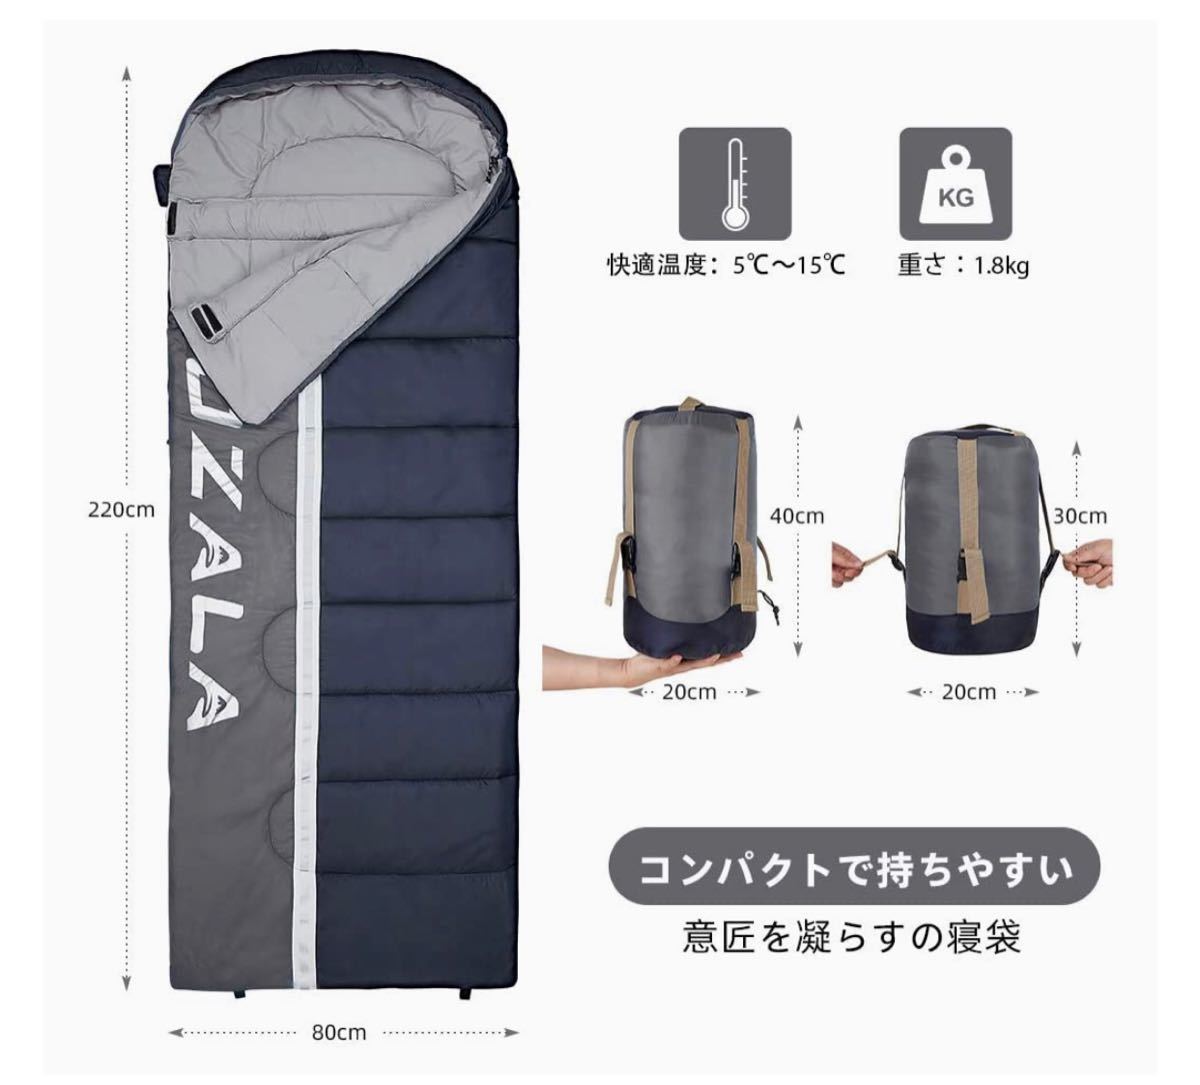 寝袋 シュラフ 封筒型 軽量 保温 210T防水 コンパクト アウトドア キャンプ 丸洗い可能 快適温度5℃~15℃ 1.8kg 